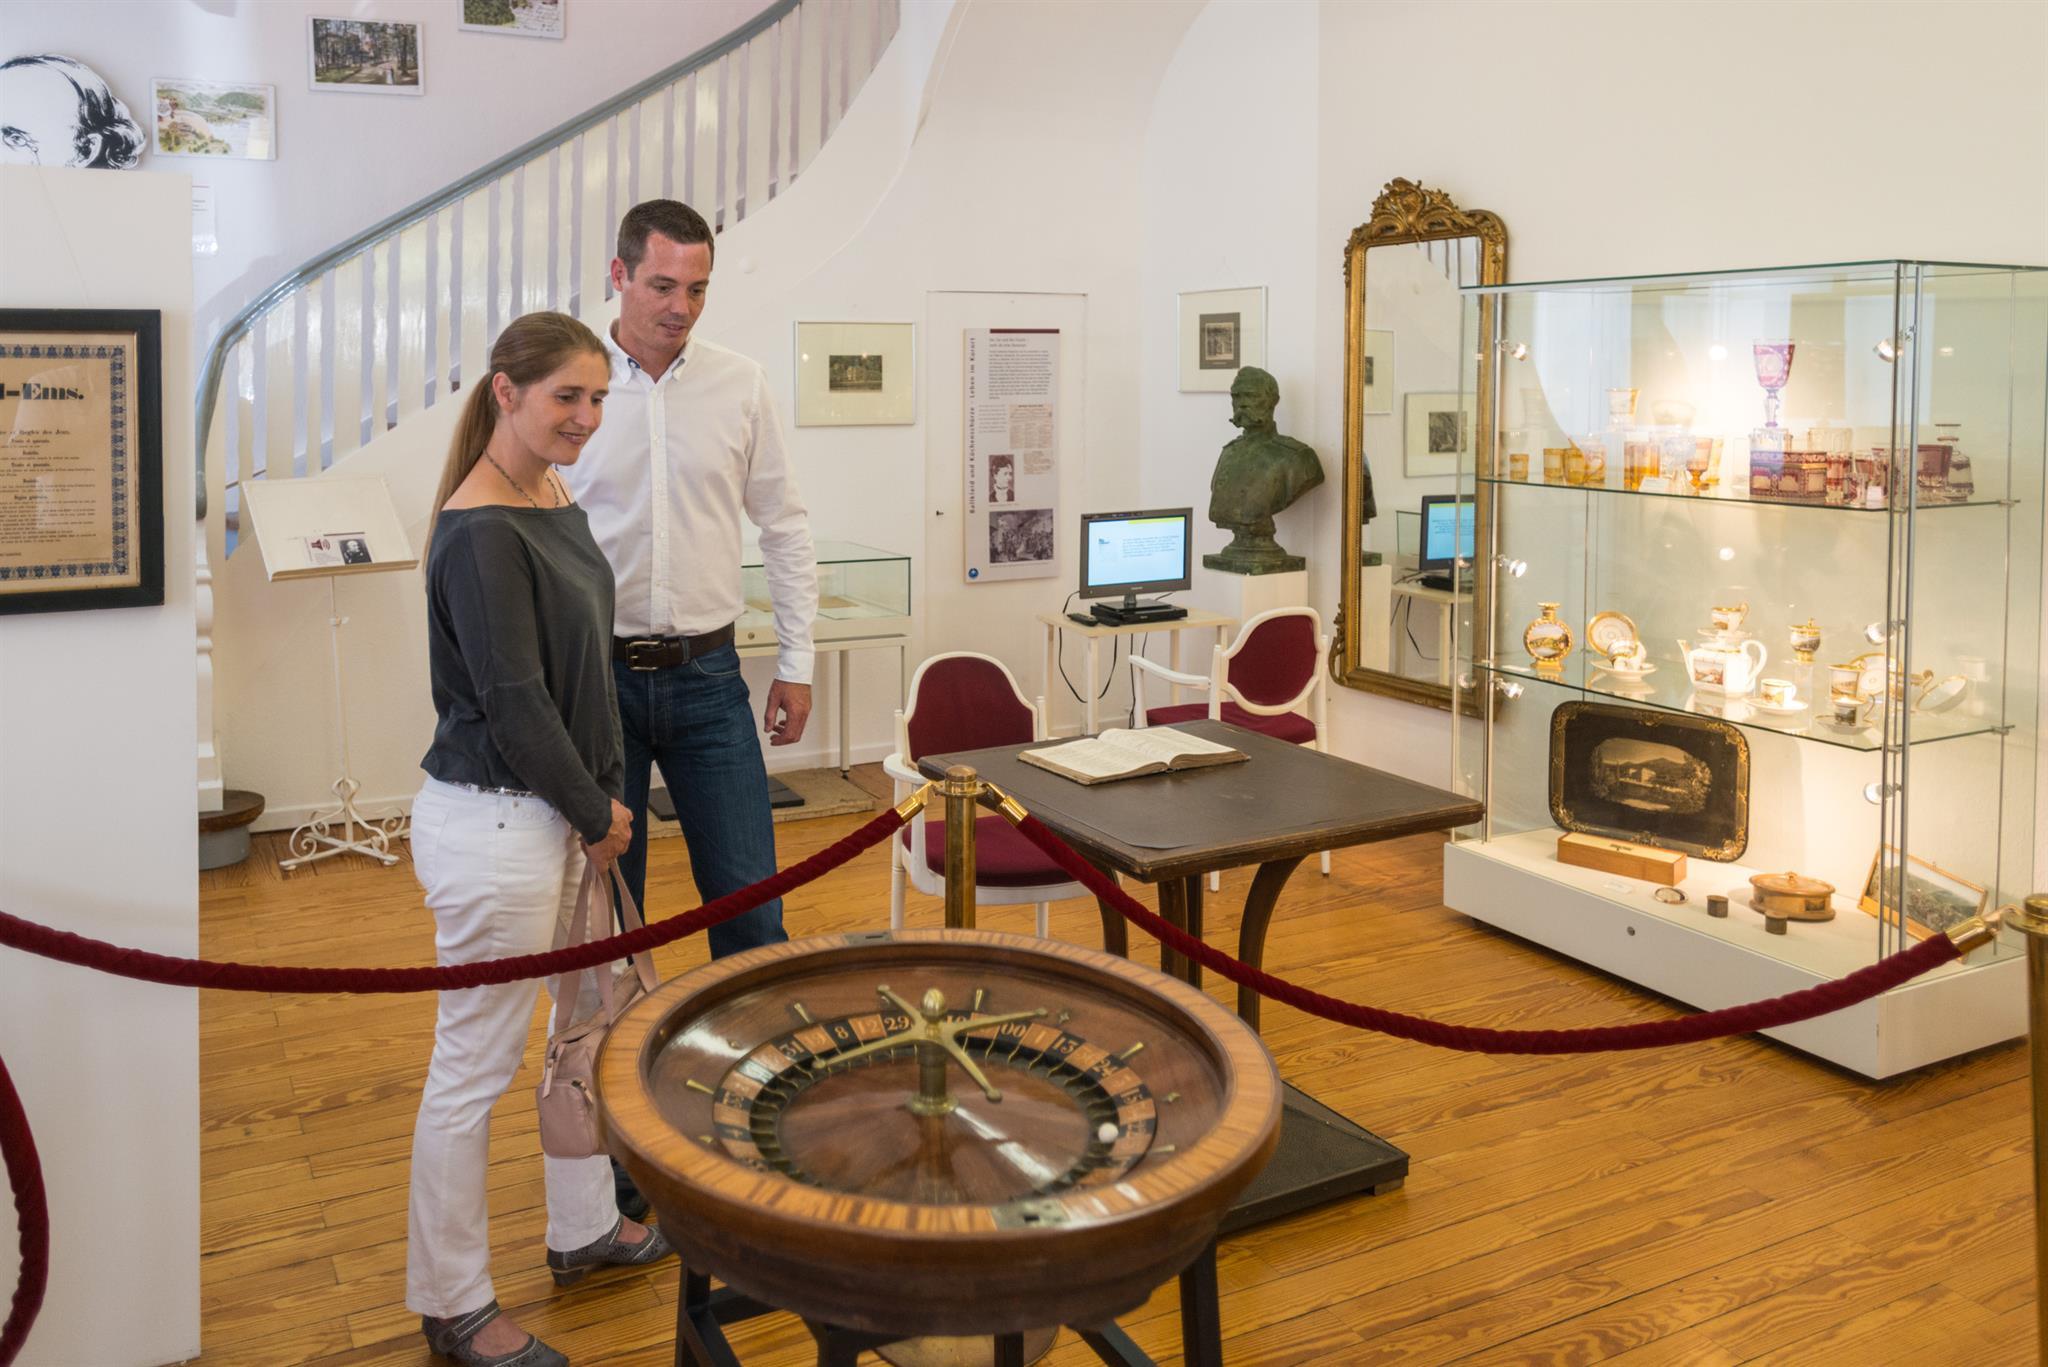 Roulettetisch der ältesten Spielbank Deutschlands